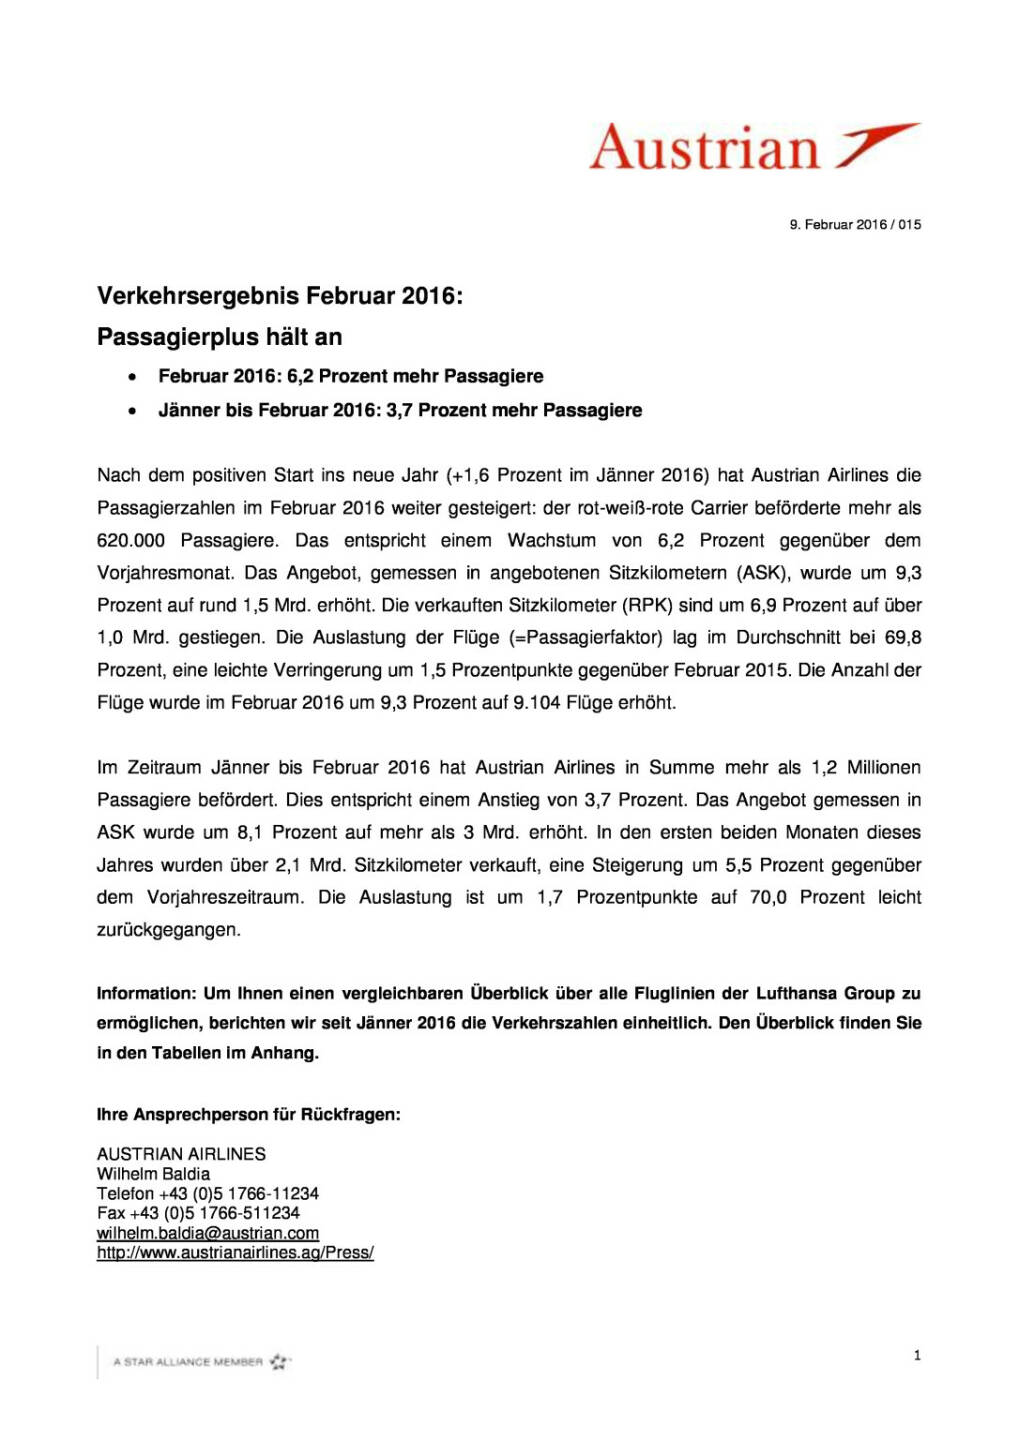 Austrian Airlines: Verkehrsergebnis Februar 2016:  Passagierplus hält an, Seite 1/3, komplettes Dokument unter http://boerse-social.com/static/uploads/file_755_austrian_airlines_verkehrsergebnis_februar_2016_passagierplus_halt_an.pdf